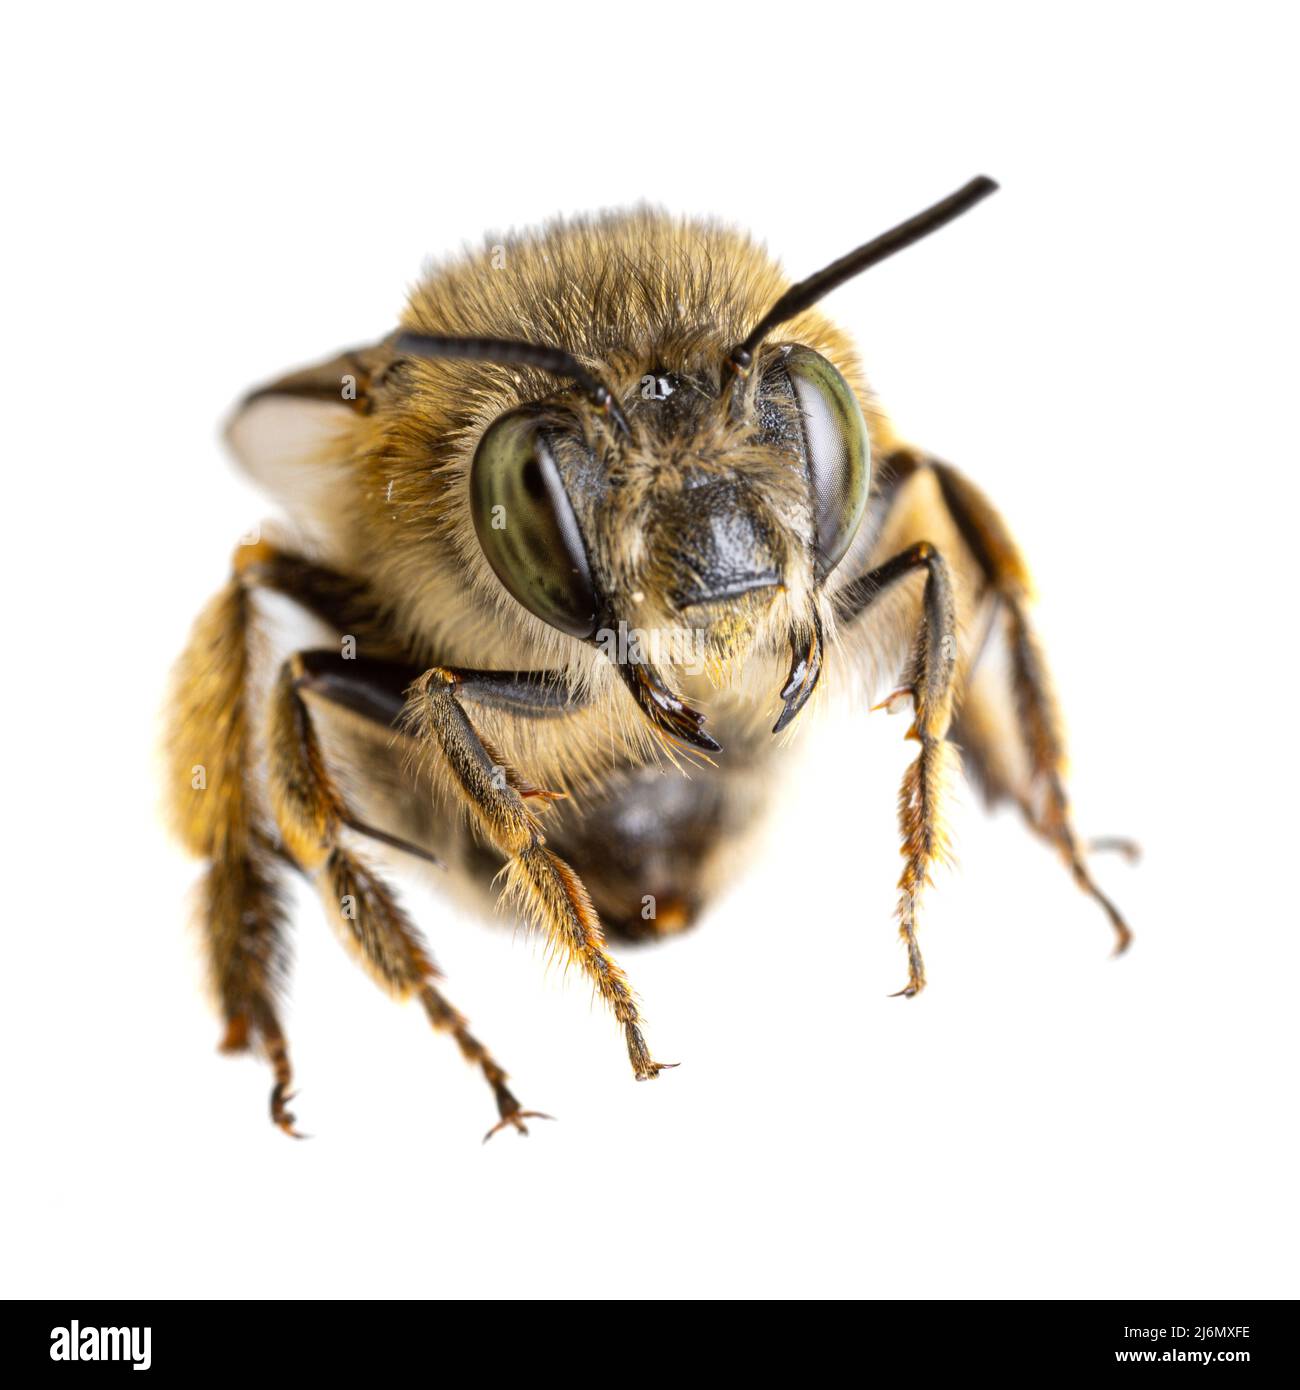 Insectos de europa - abejas: Macro de la hembra Anthophora crinipes (Pelzbienen) aisladas sobre fondo blanco - vista de la cabeza Foto de stock